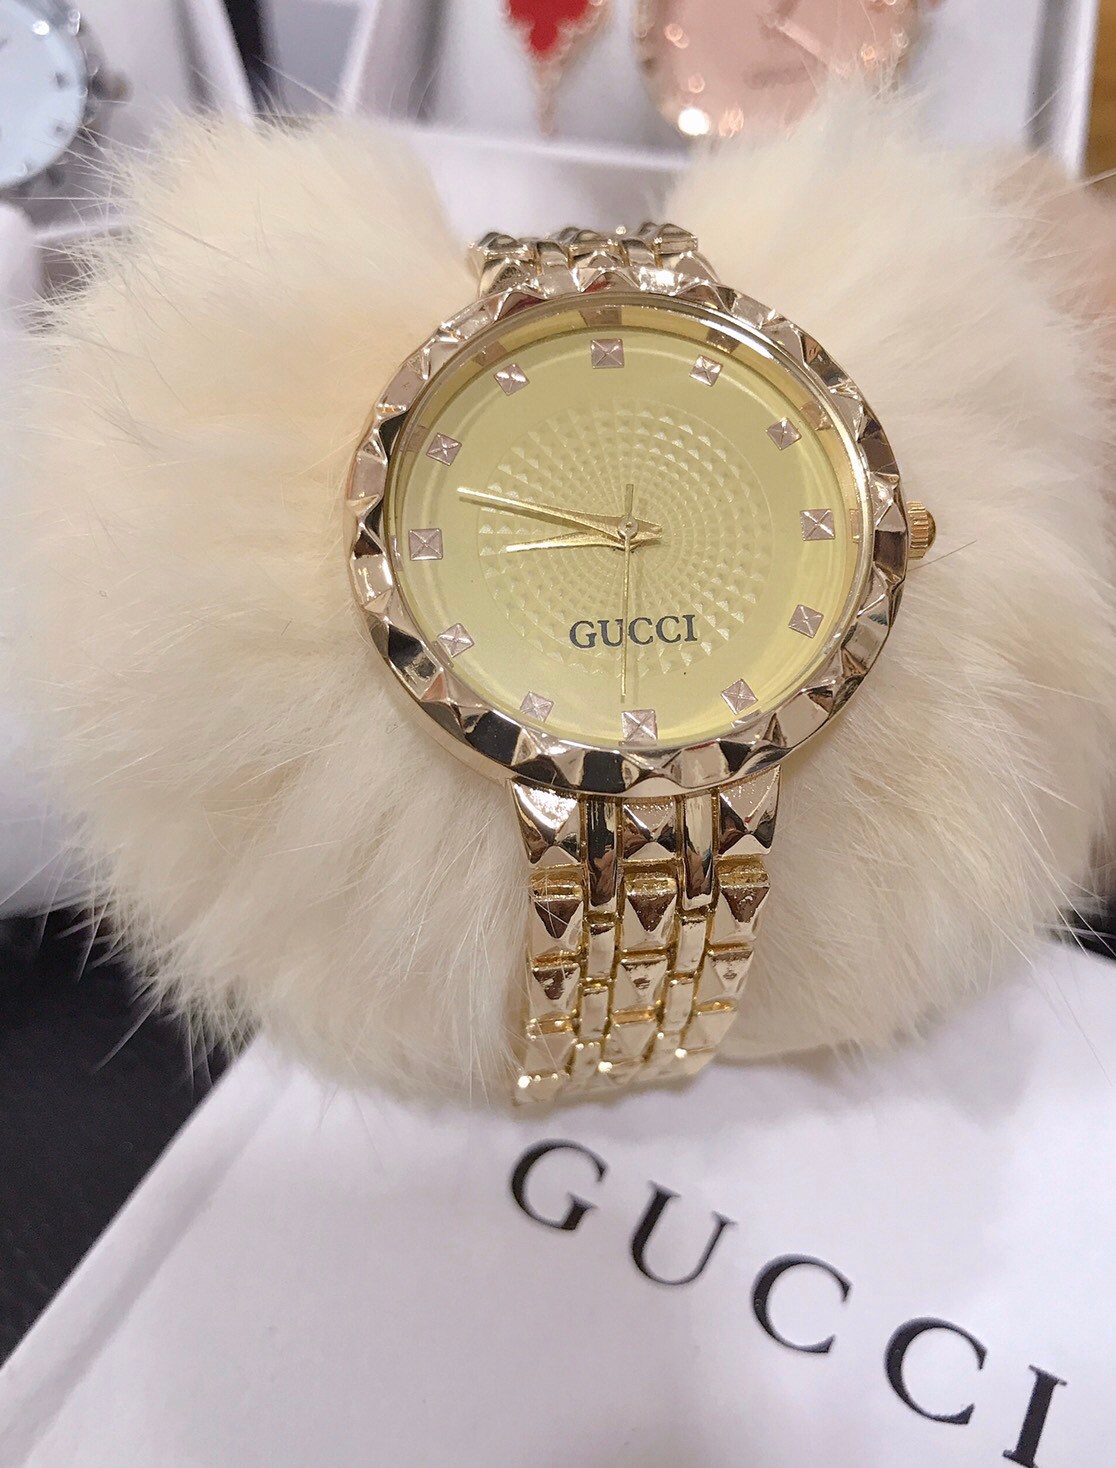 นาฬิกา กุชชี่ Gucci สำหรับผู้หญิงหรือชาย